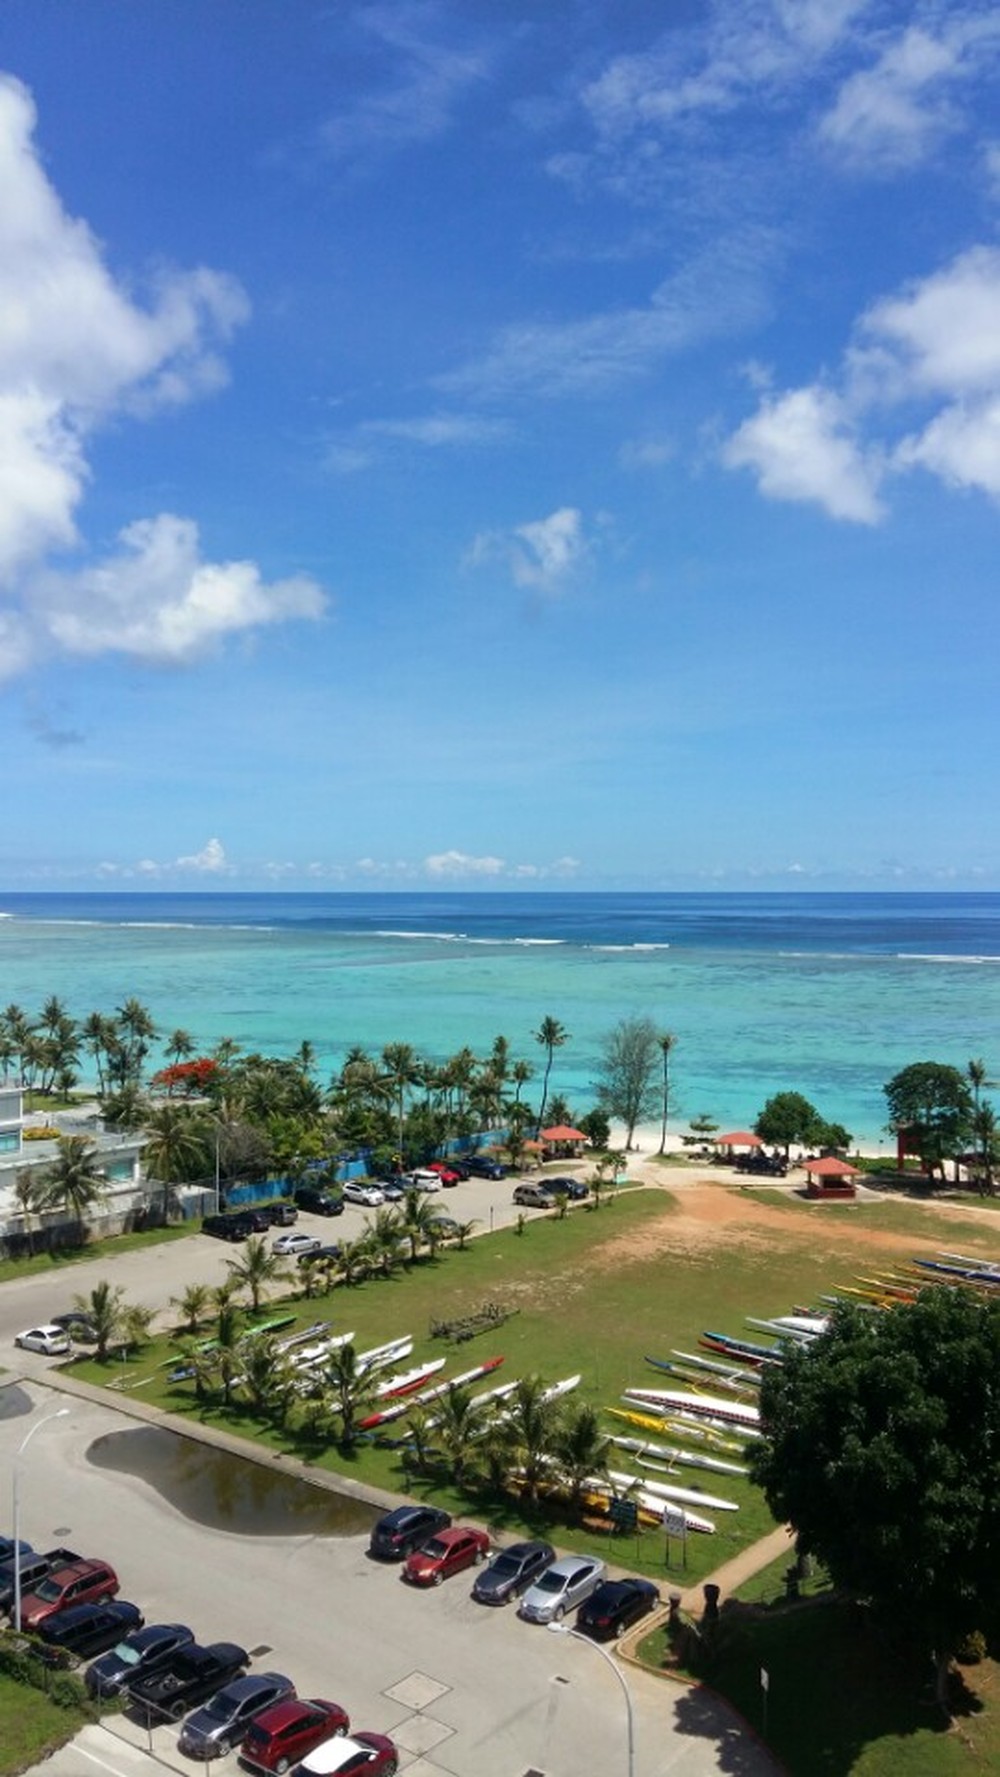 괌의 바닷가 풍경